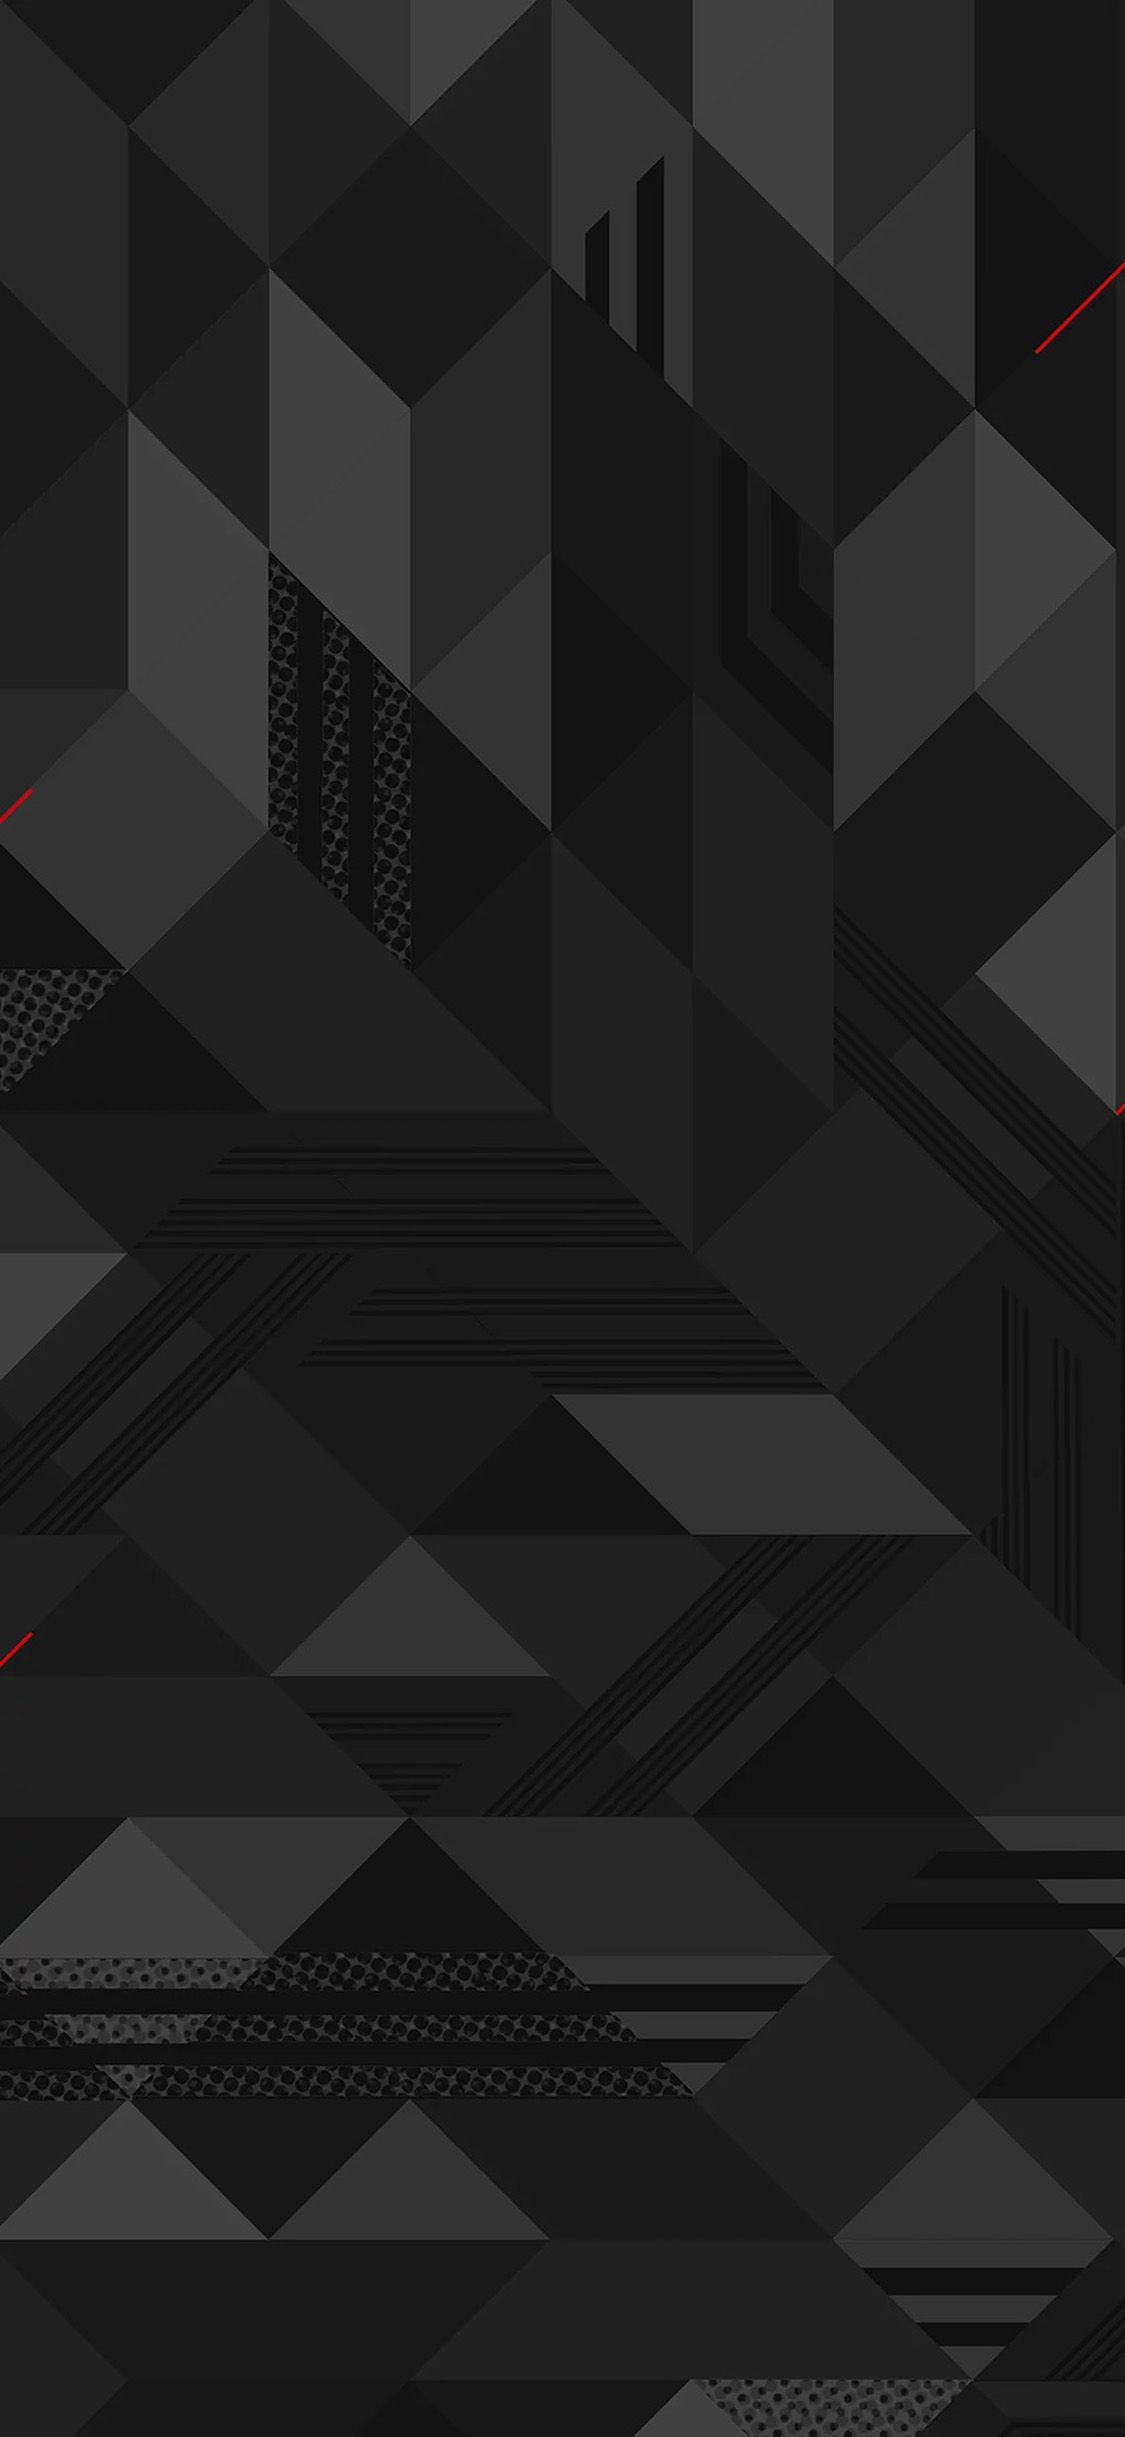 Dark abstract triangular pattern iPhone X 125